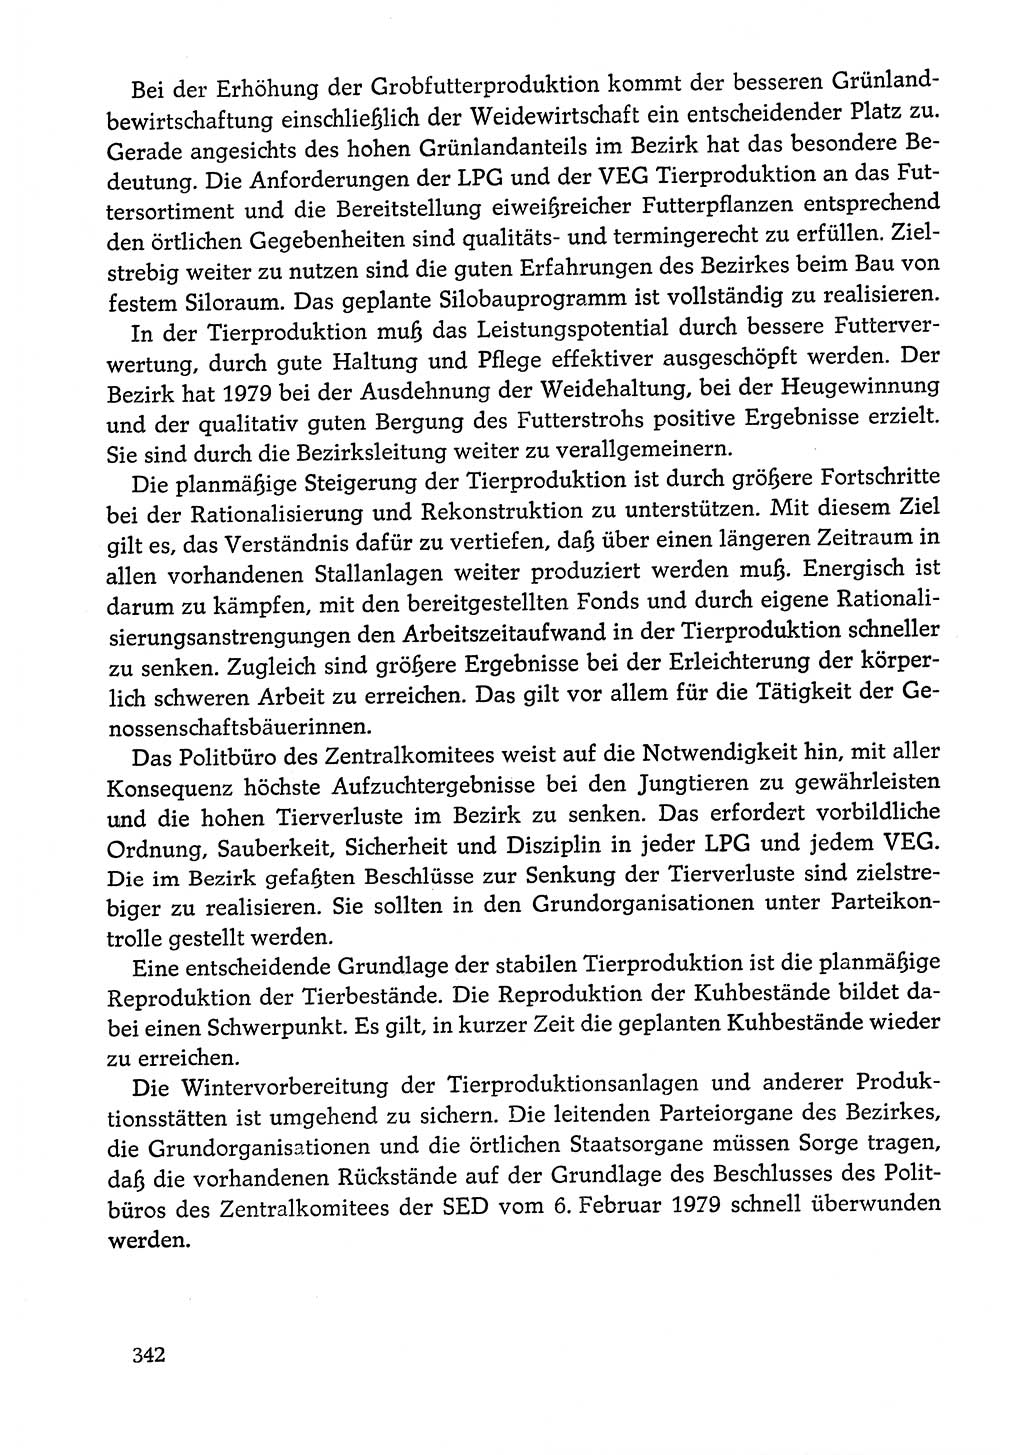 Dokumente der Sozialistischen Einheitspartei Deutschlands (SED) [Deutsche Demokratische Republik (DDR)] 1978-1979, Seite 342 (Dok. SED DDR 1978-1979, S. 342)